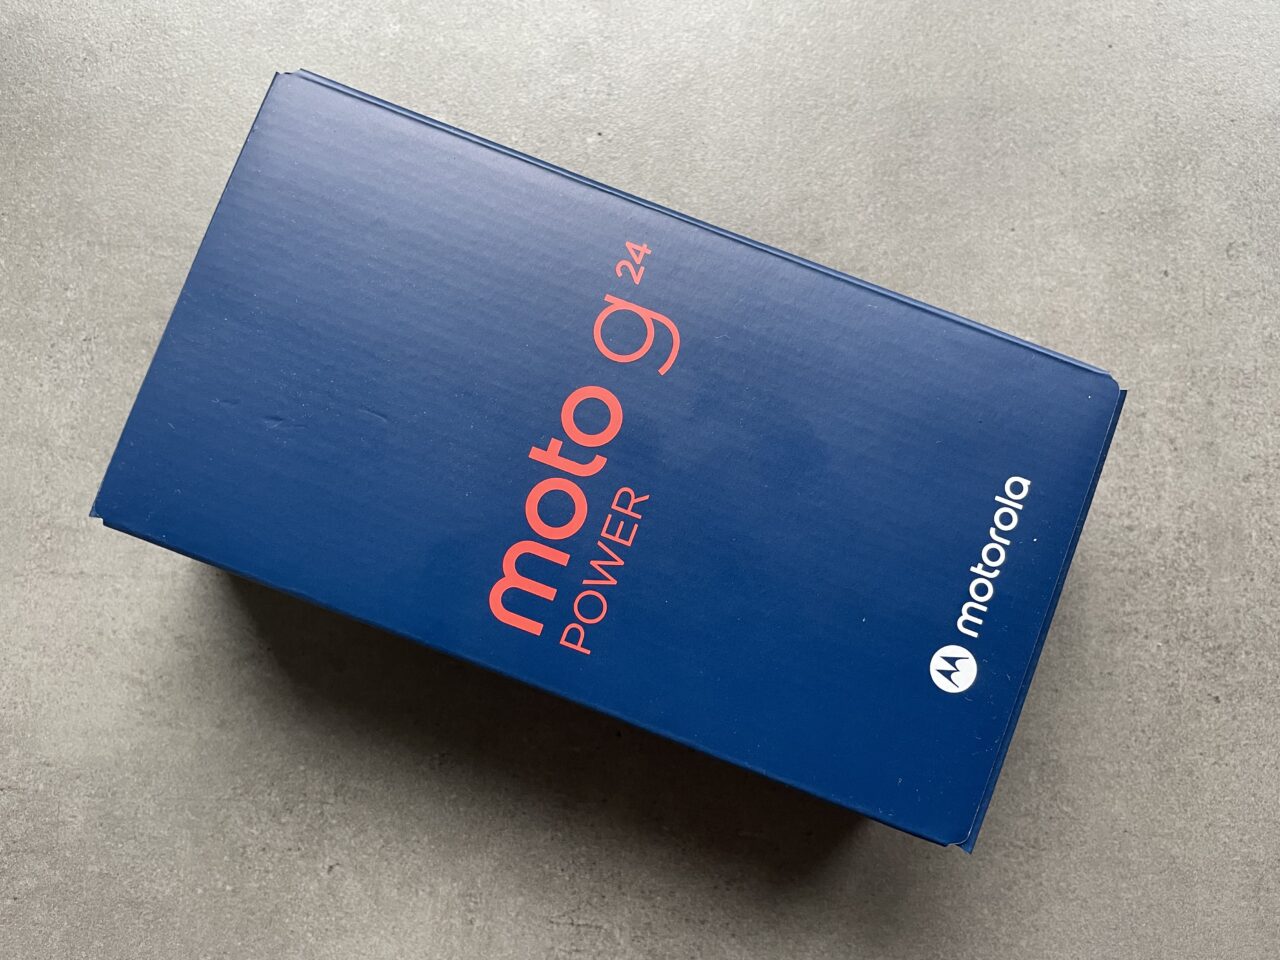 Niebieskie opakowanie smartfona Moto G Power 2021 z logotypem Motorola, położone na szarej powierzchni.